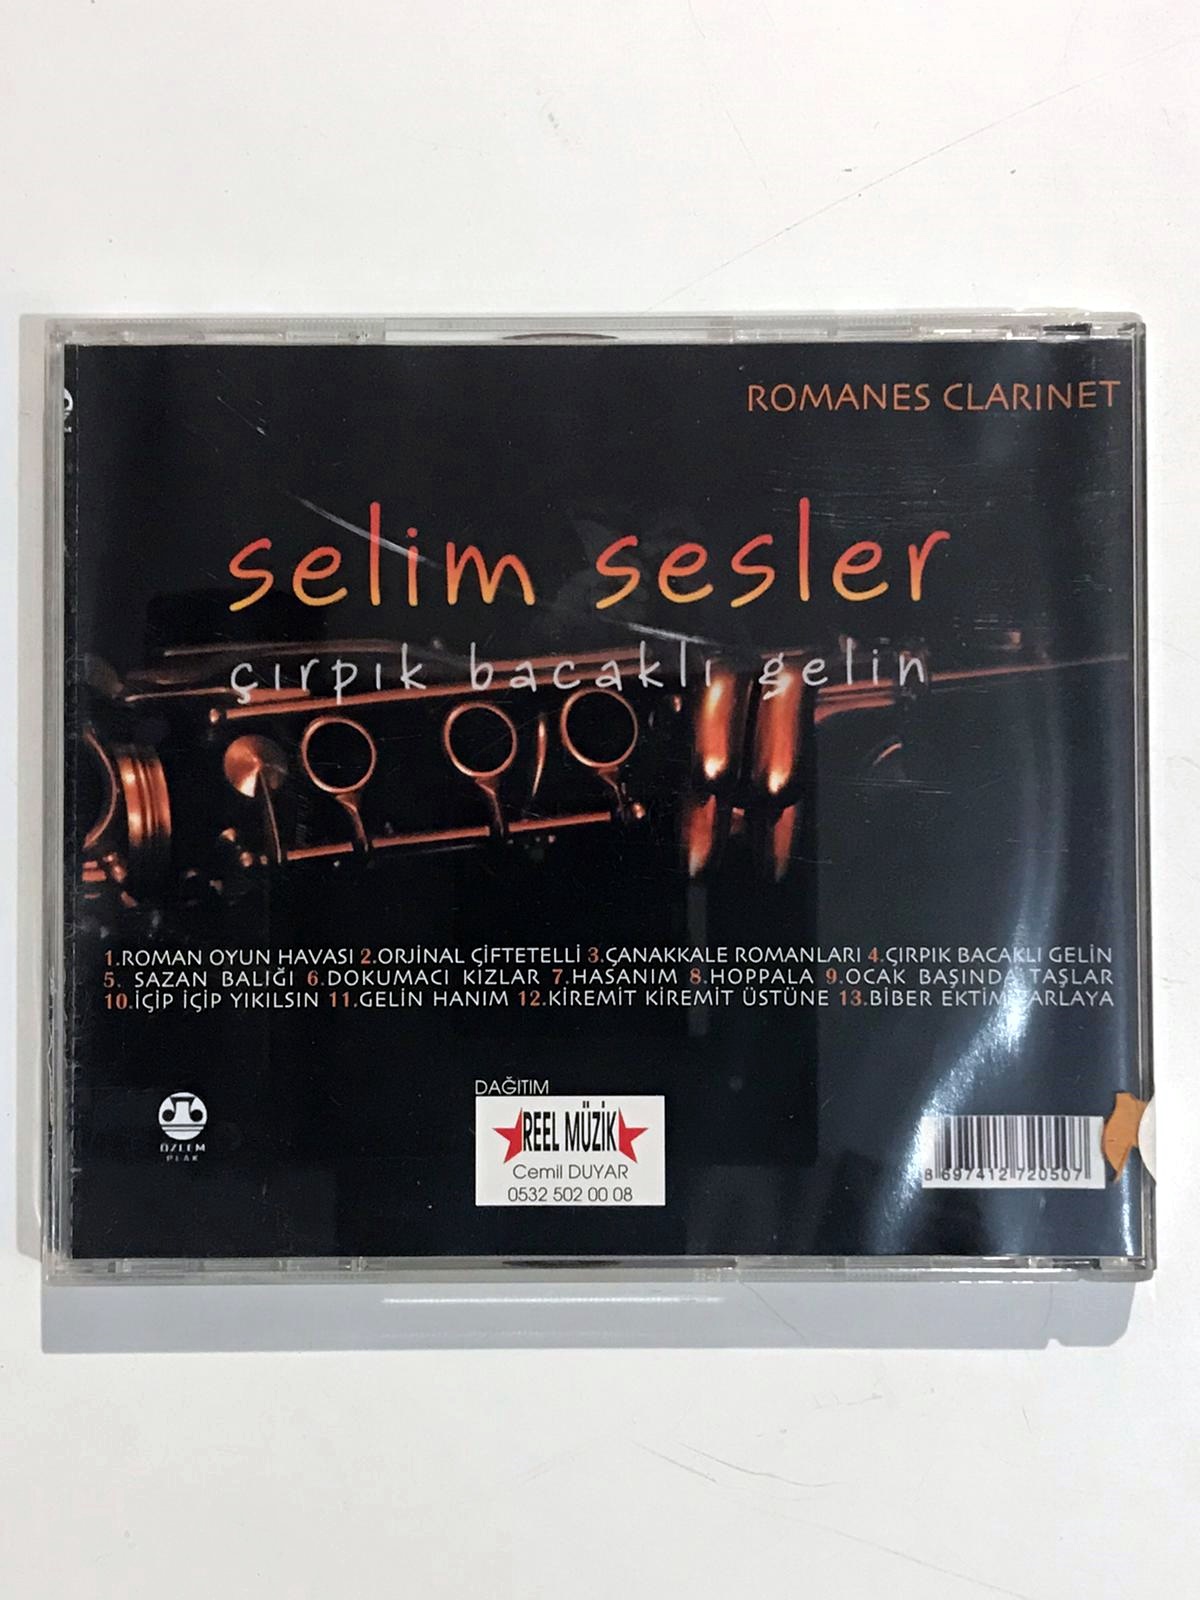 Çırpık Bacaklı Gelin / Selim SESLER - Cd